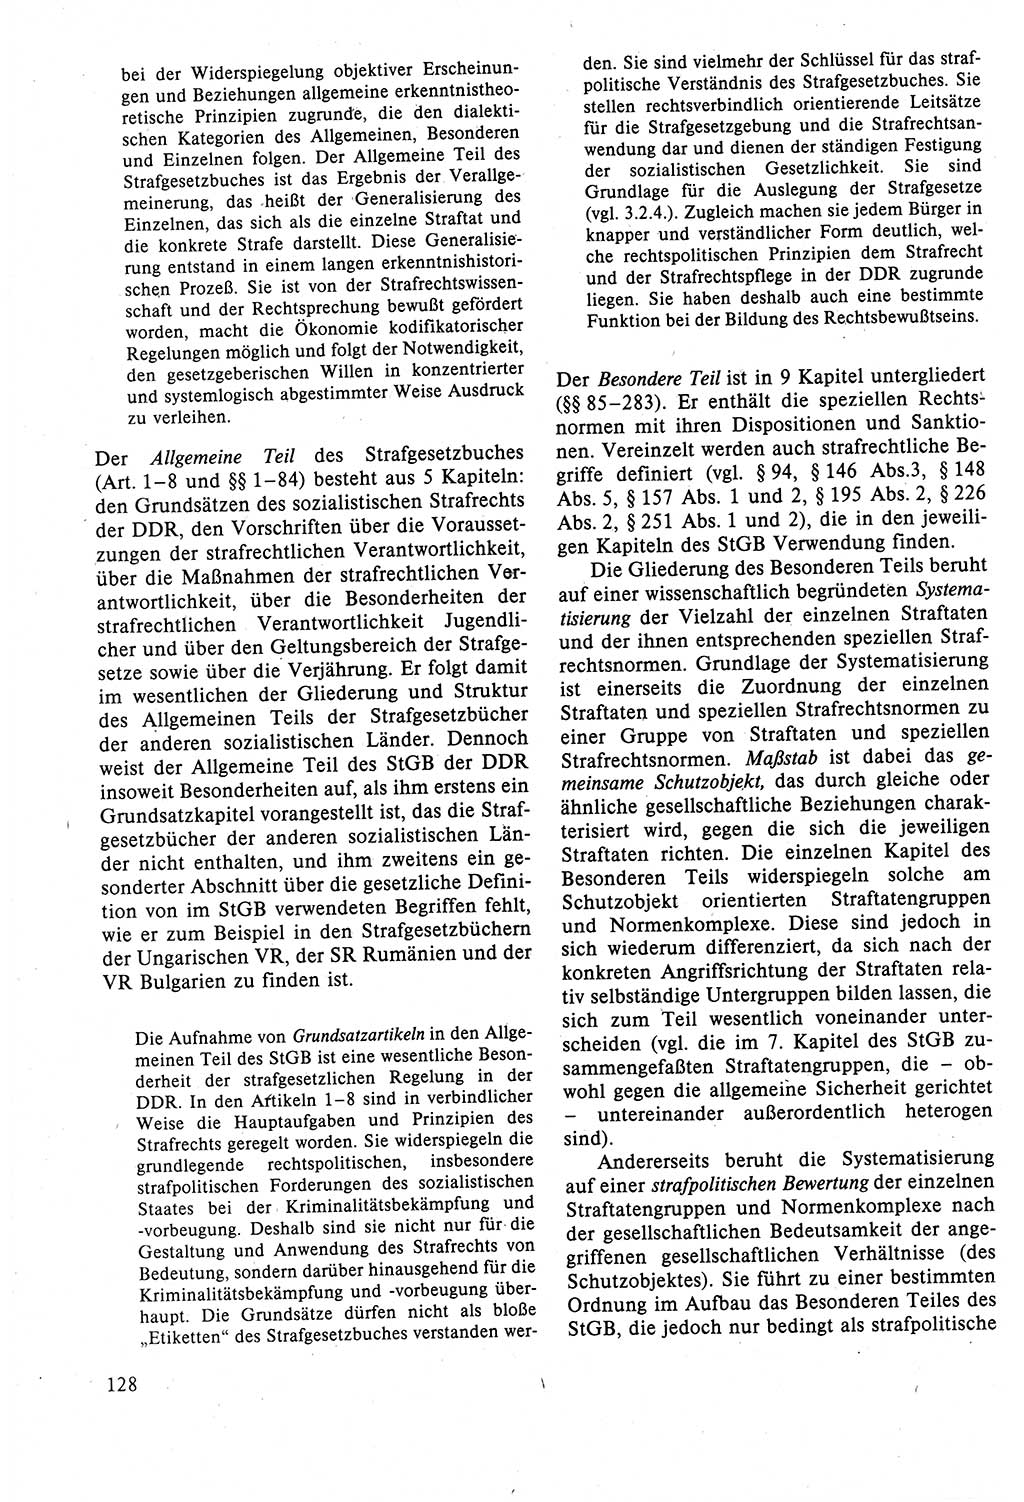 Strafrecht der DDR (Deutsche Demokratische Republik), Lehrbuch 1988, Seite 128 (Strafr. DDR Lb. 1988, S. 128)